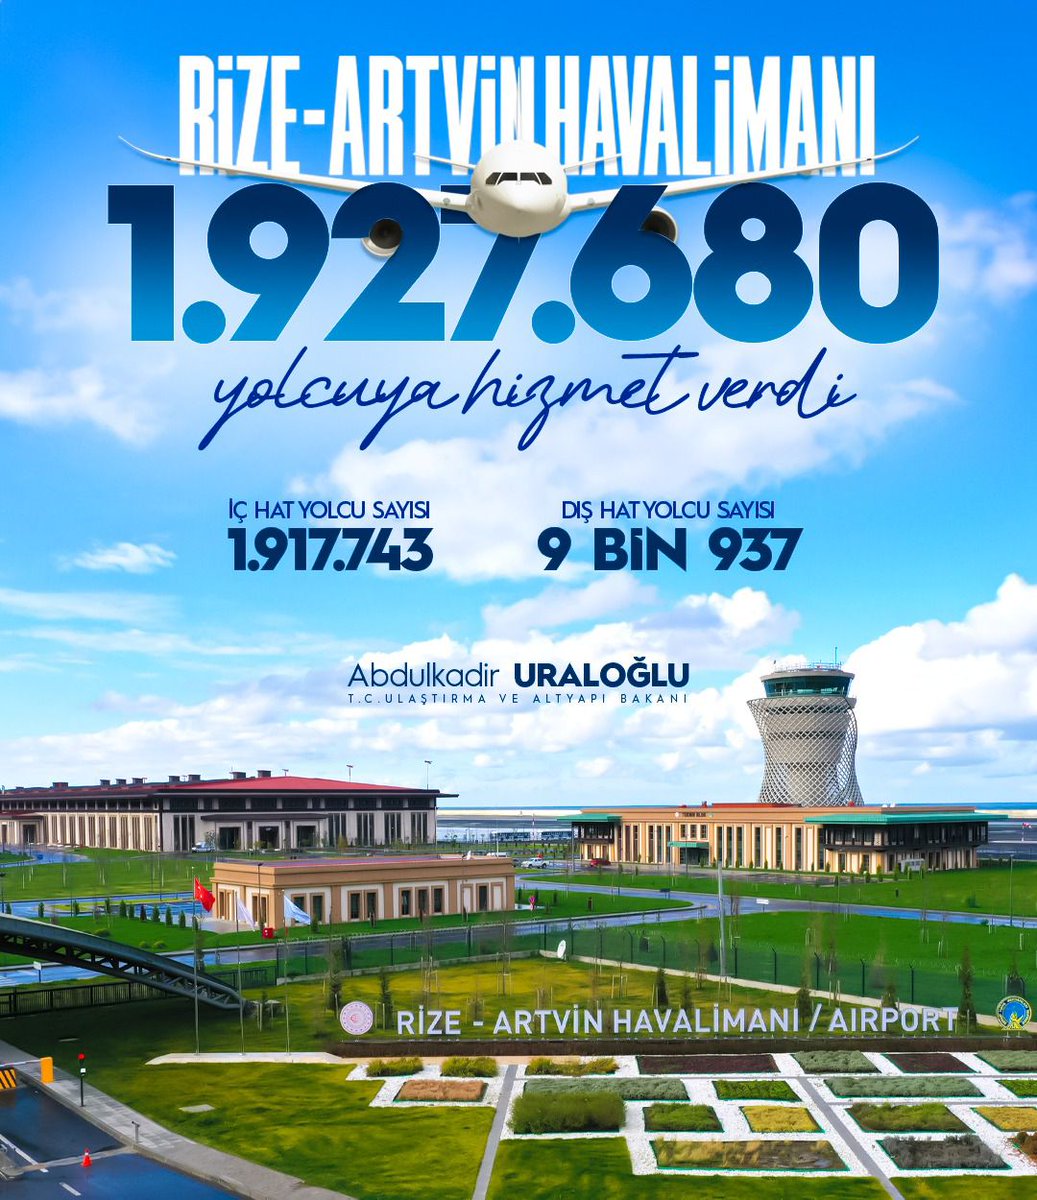 Rize-Artvin Havalimanı 2️⃣ Yaşında!

Türk mühendisliğinin simge eserlerinden Rize-Artvin Havalimanı’nda, açıldığı günden 2024 Nisan ayı sonuna kadar;

👥 1 milyon 927 bin 680 yolcu seyahat etti.
✈️ 13 bin 901 uçağa hizmet verildi.

#TürkiyeHızlanıyor 🇹🇷